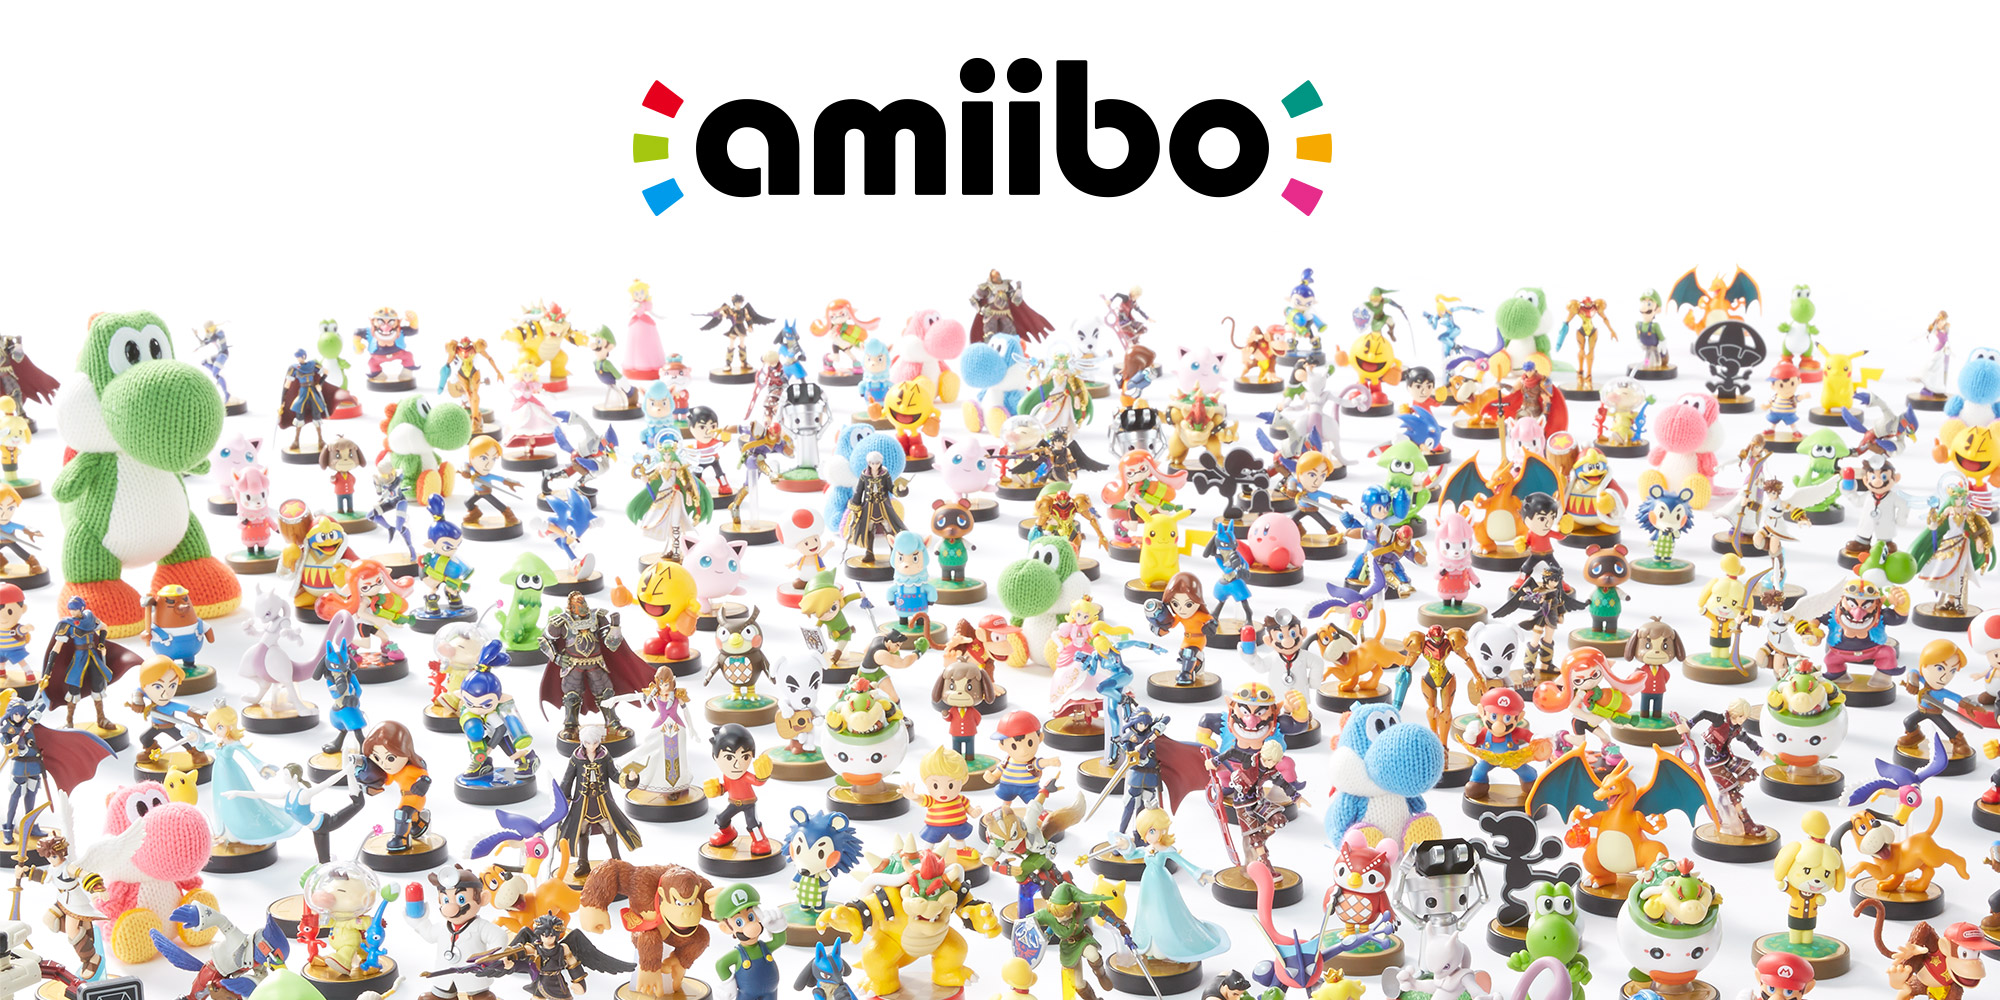 Información amiibo | Hardware Nintendo